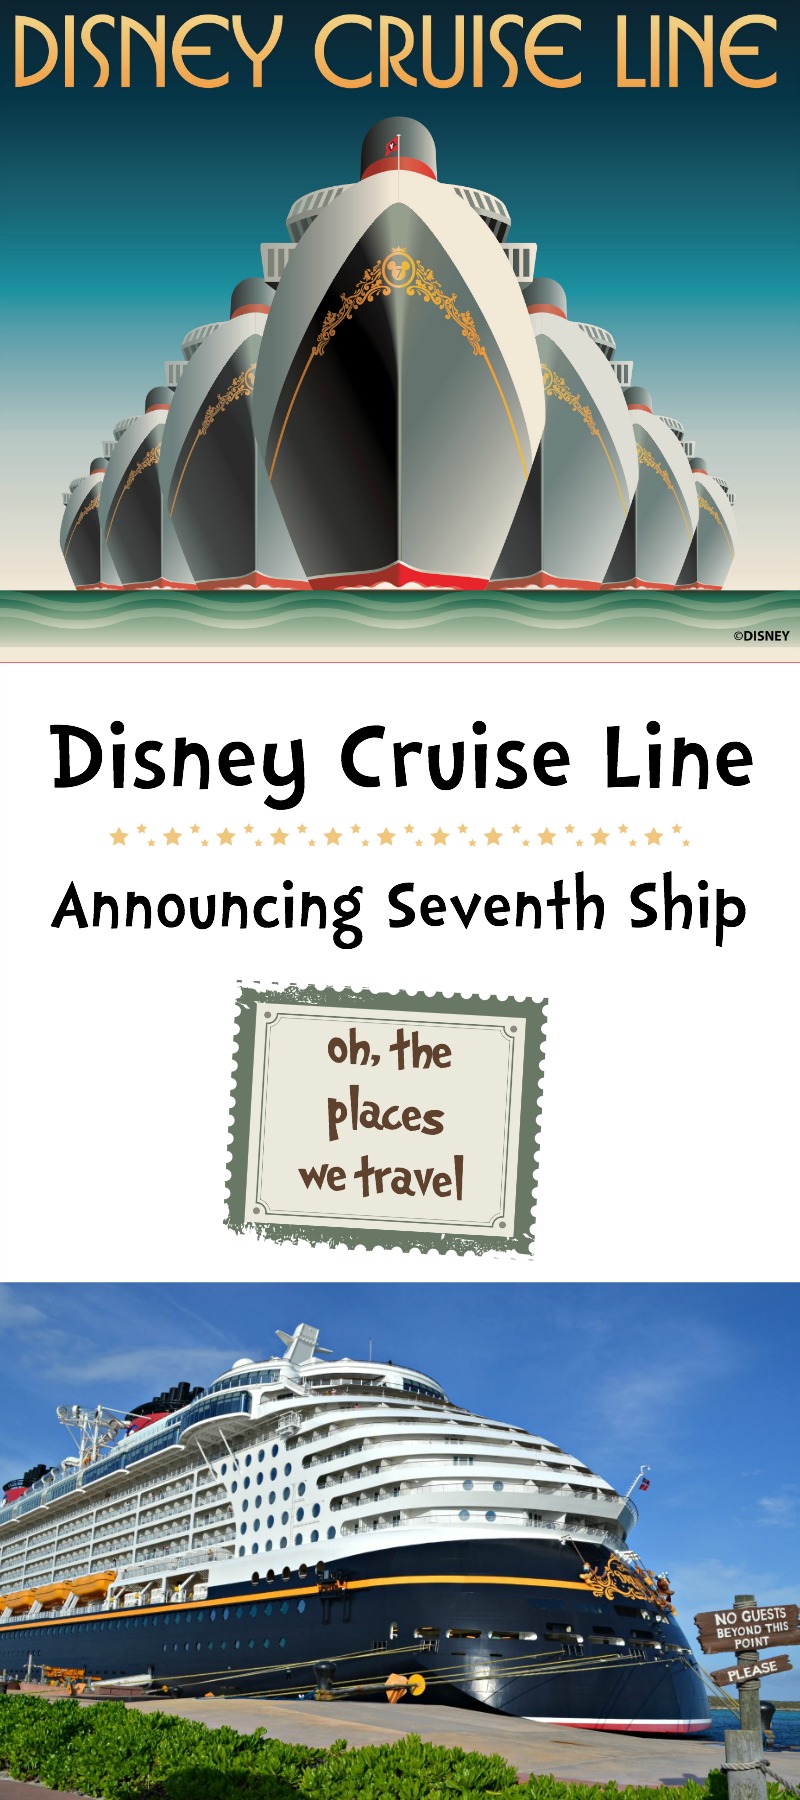 Seventh Ship Announced